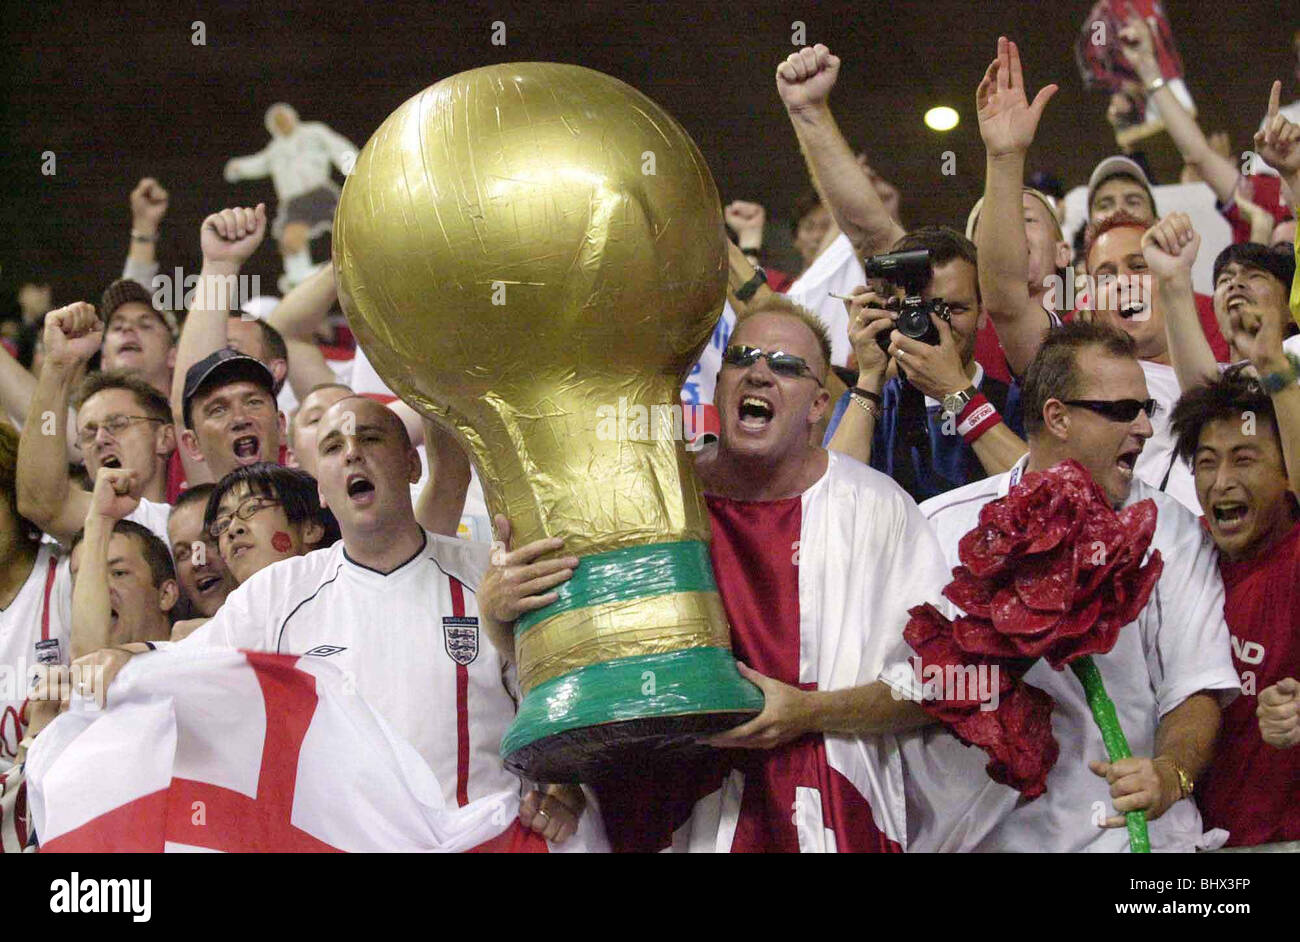 World Cup Juni 2002 zweite Runde. England-Fans feiern in ihrem Spiel gegen Dänemark England 3-0-Sieg Stockfoto